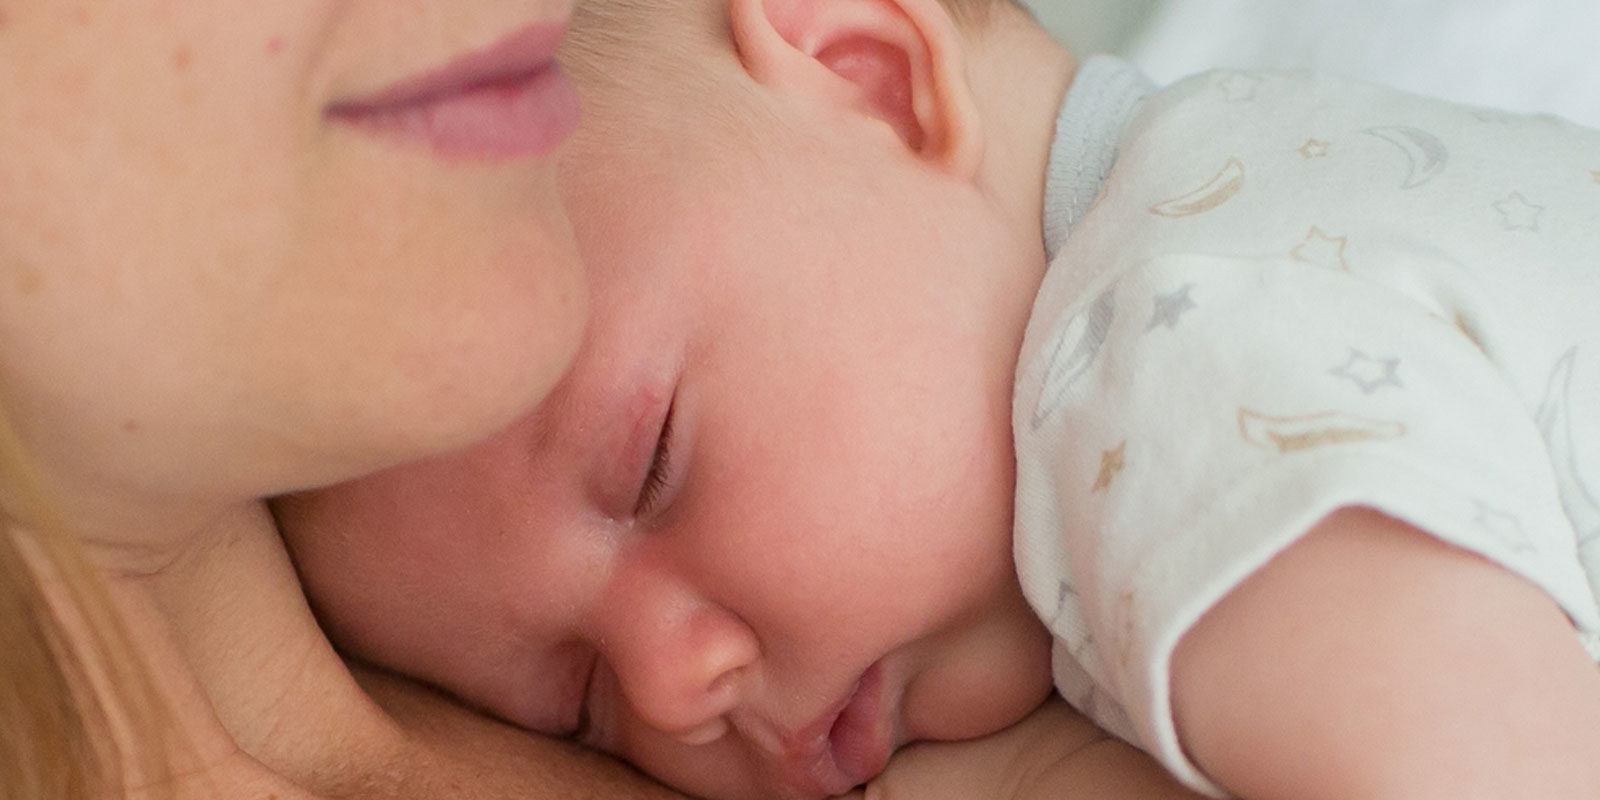 infant sleeping on women's chest